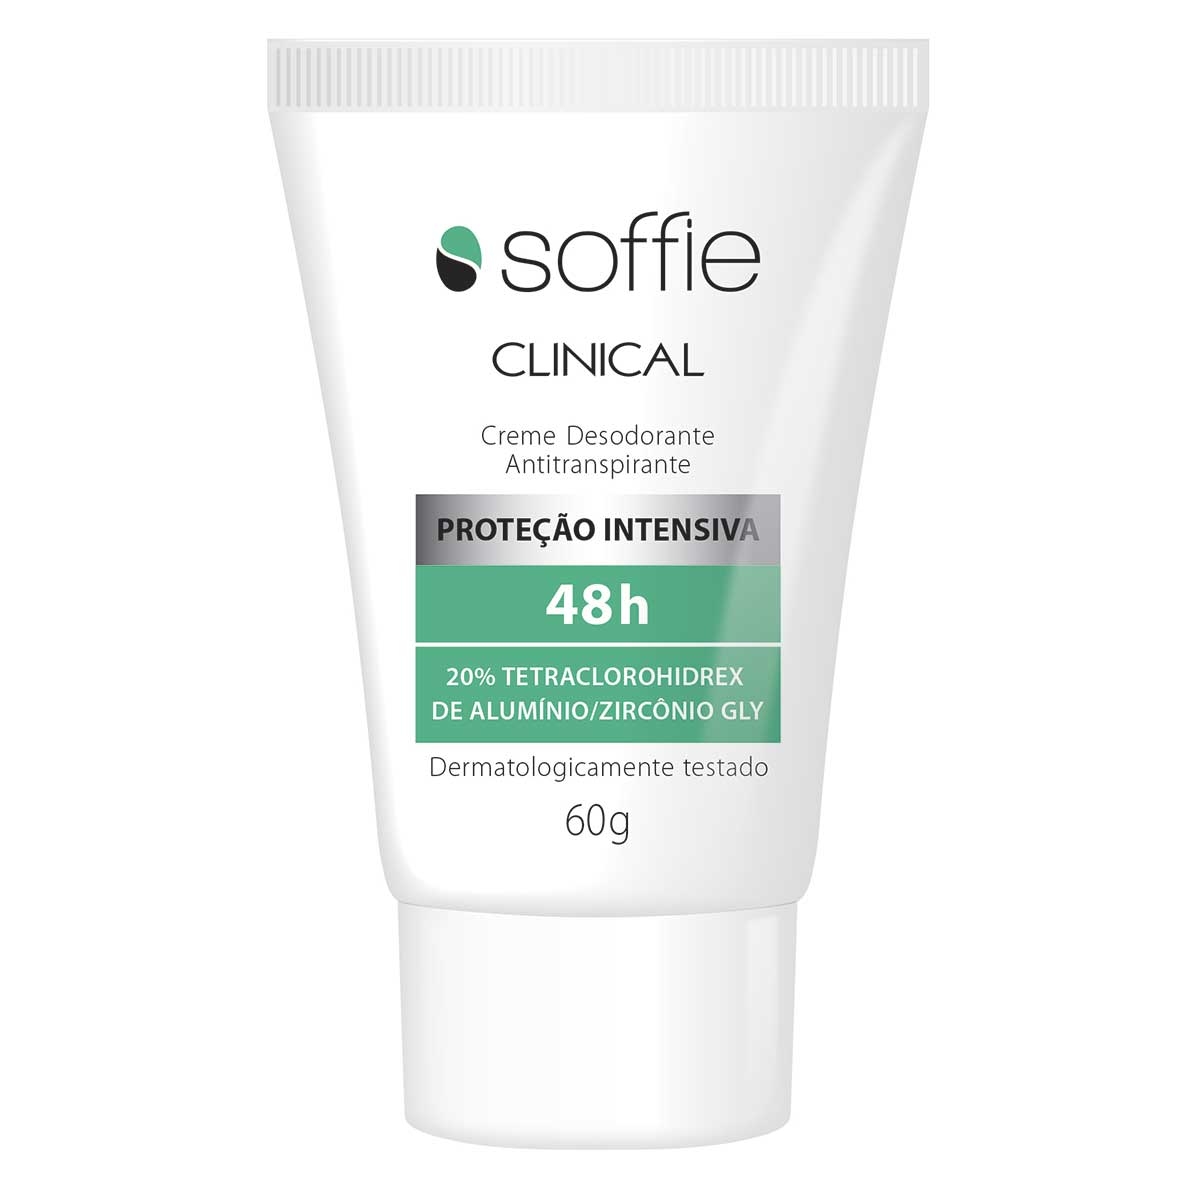 Creme Desodorante Antitranspirante Soffie Clinical 48h com 60g 60g